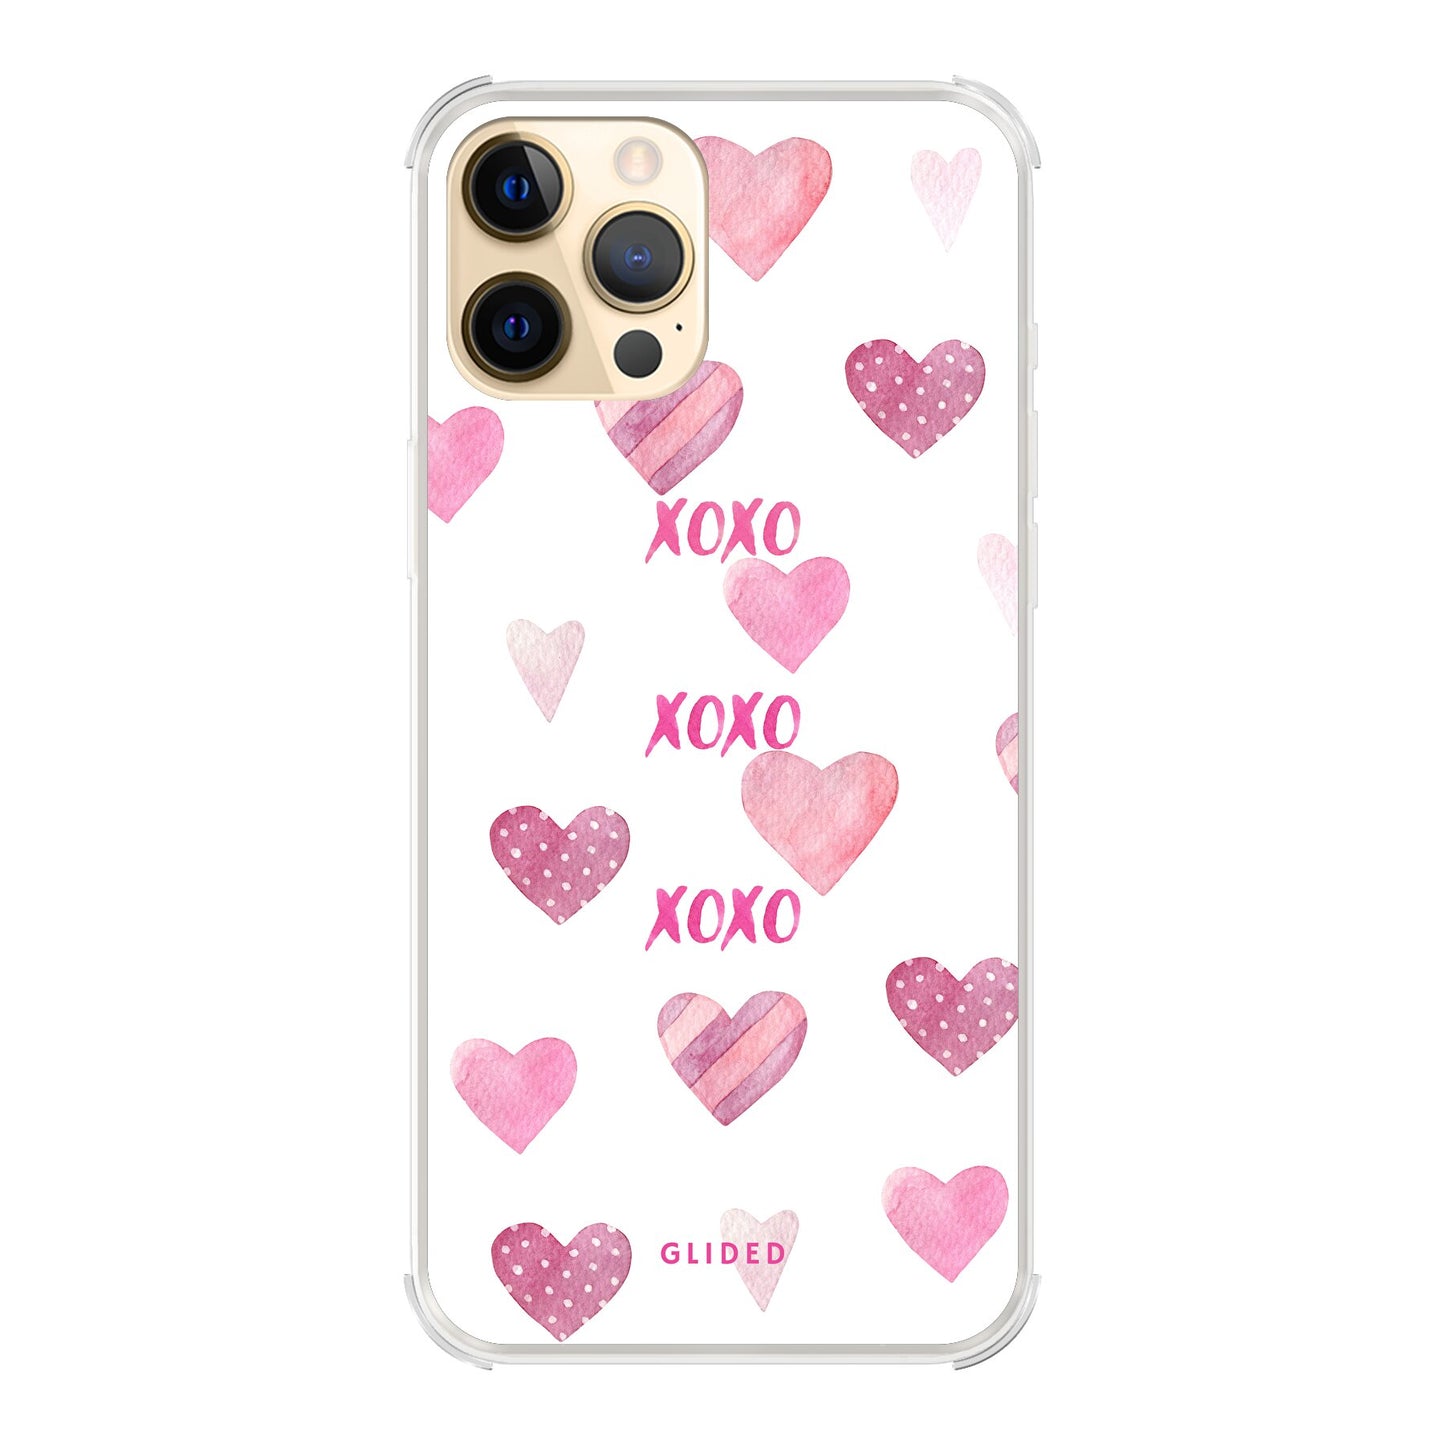 Xoxo - iPhone 12 Pro Max - Bumper case